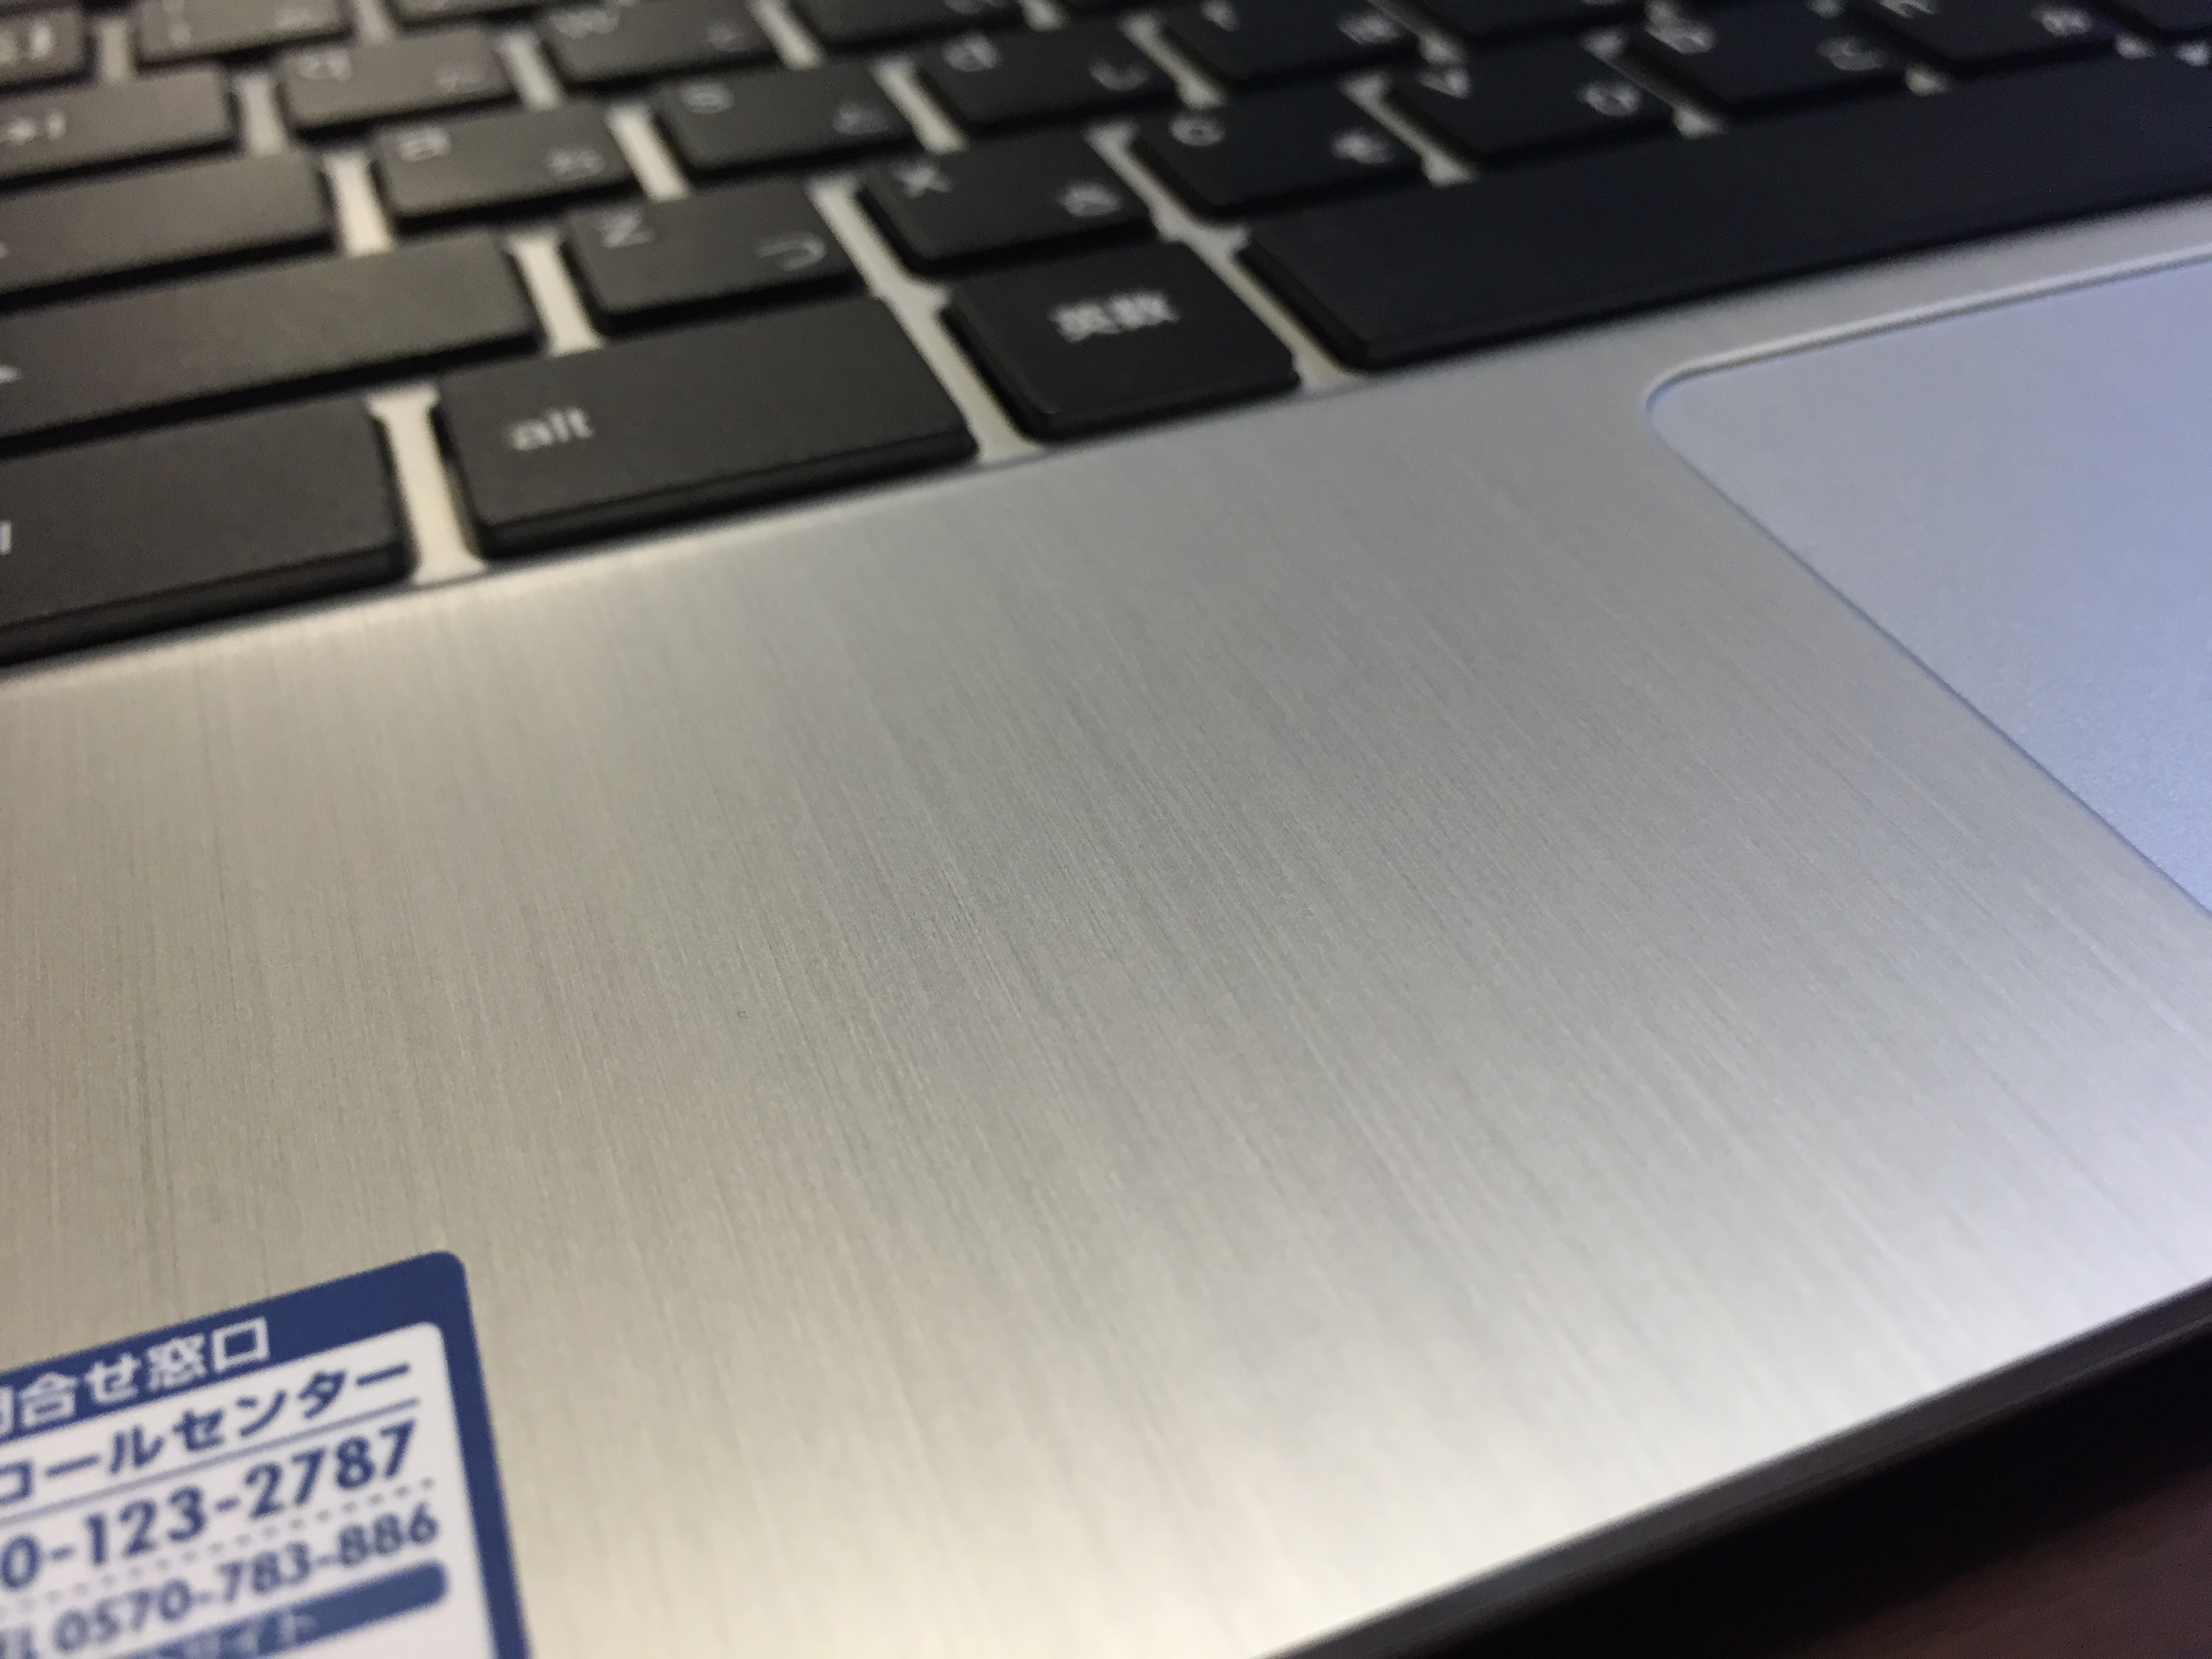 1040-201510_ASUS Chromebook Flip C100PA 06